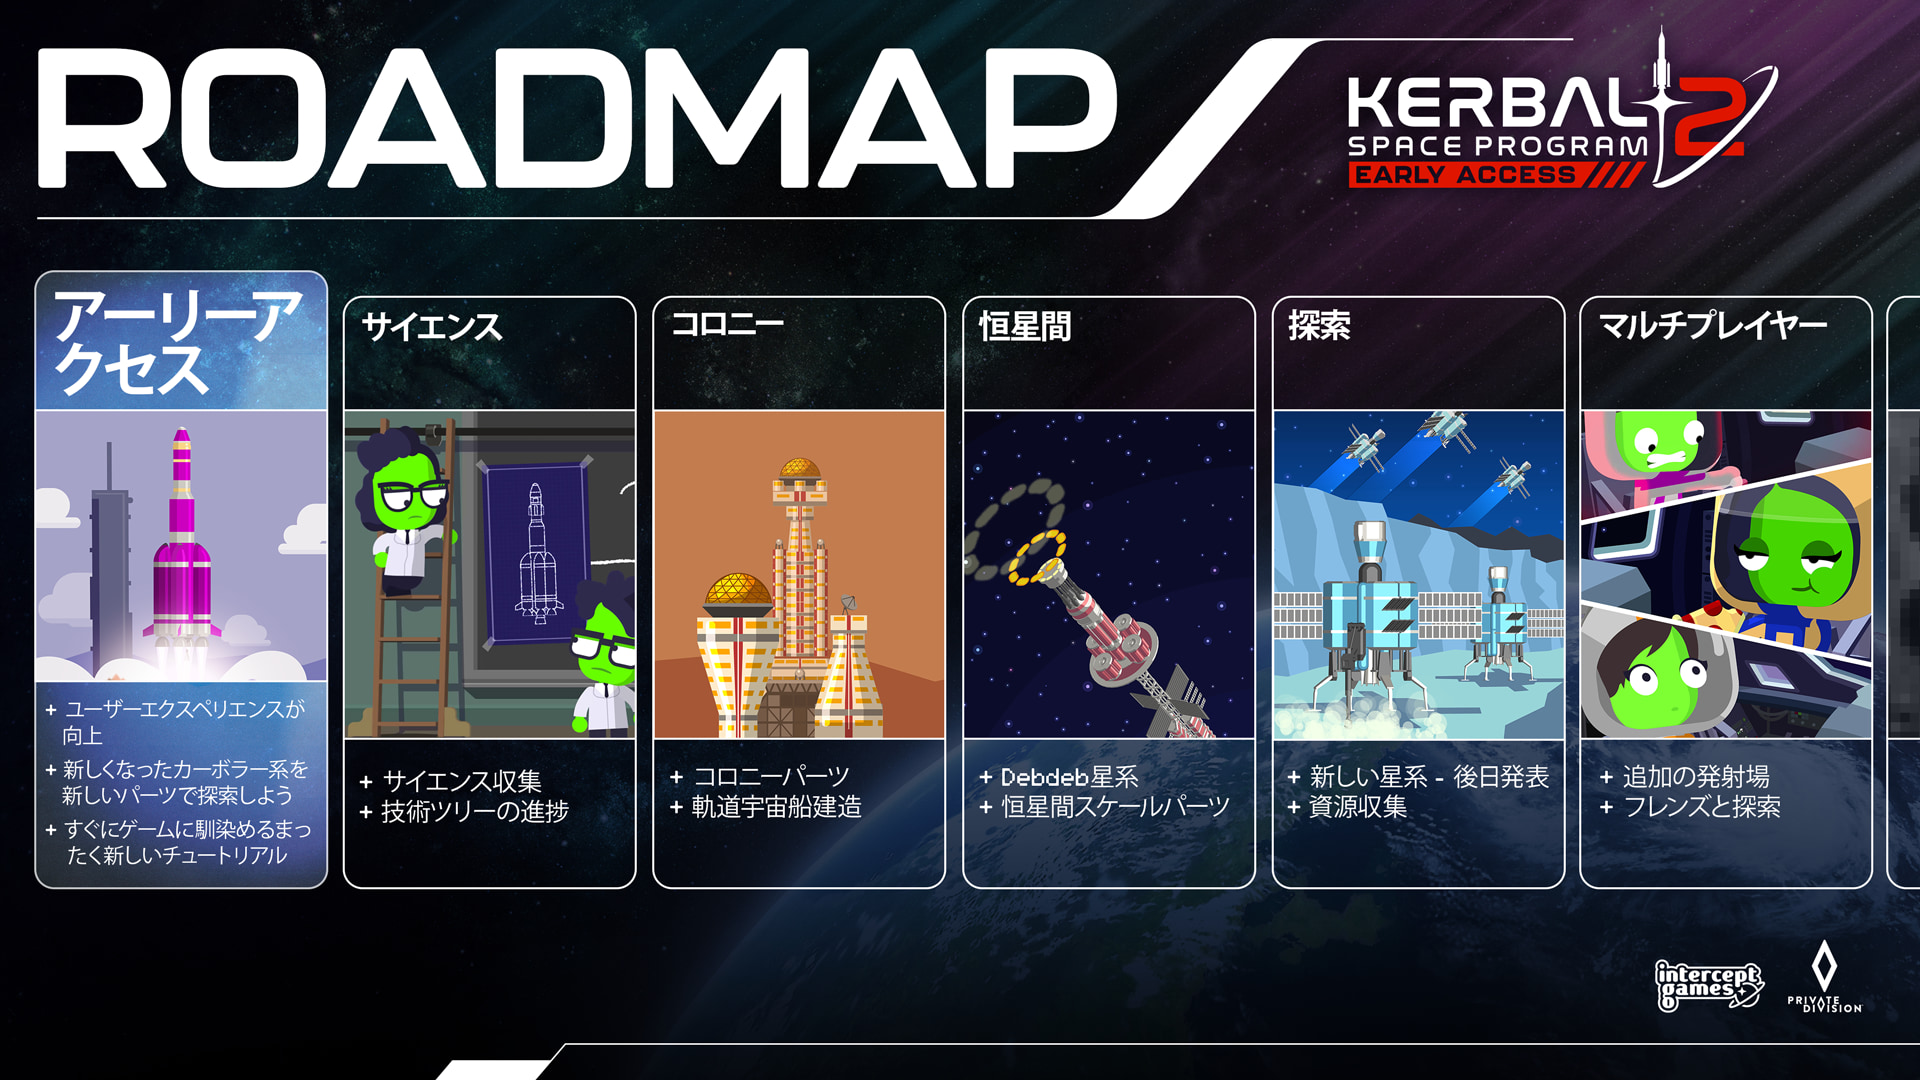 KSP2 Steam About ROADMAP JP